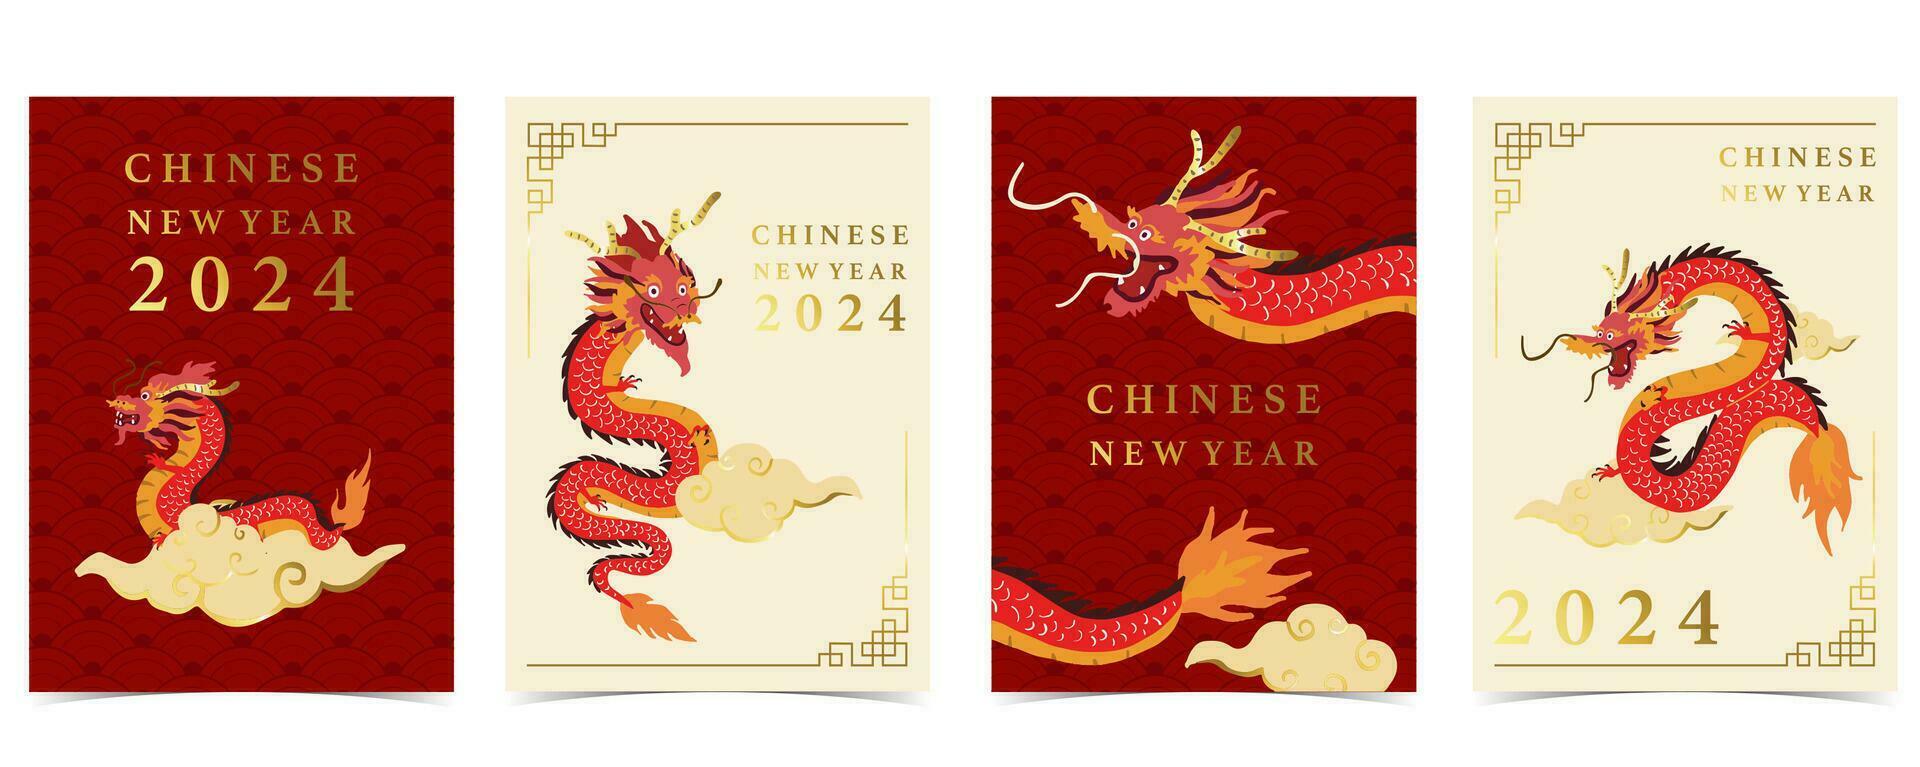 oro rojo chino nuevo año tarjeta con dragón,nube.editable vector ilustración para sitio web, invitación,postal y pegatina